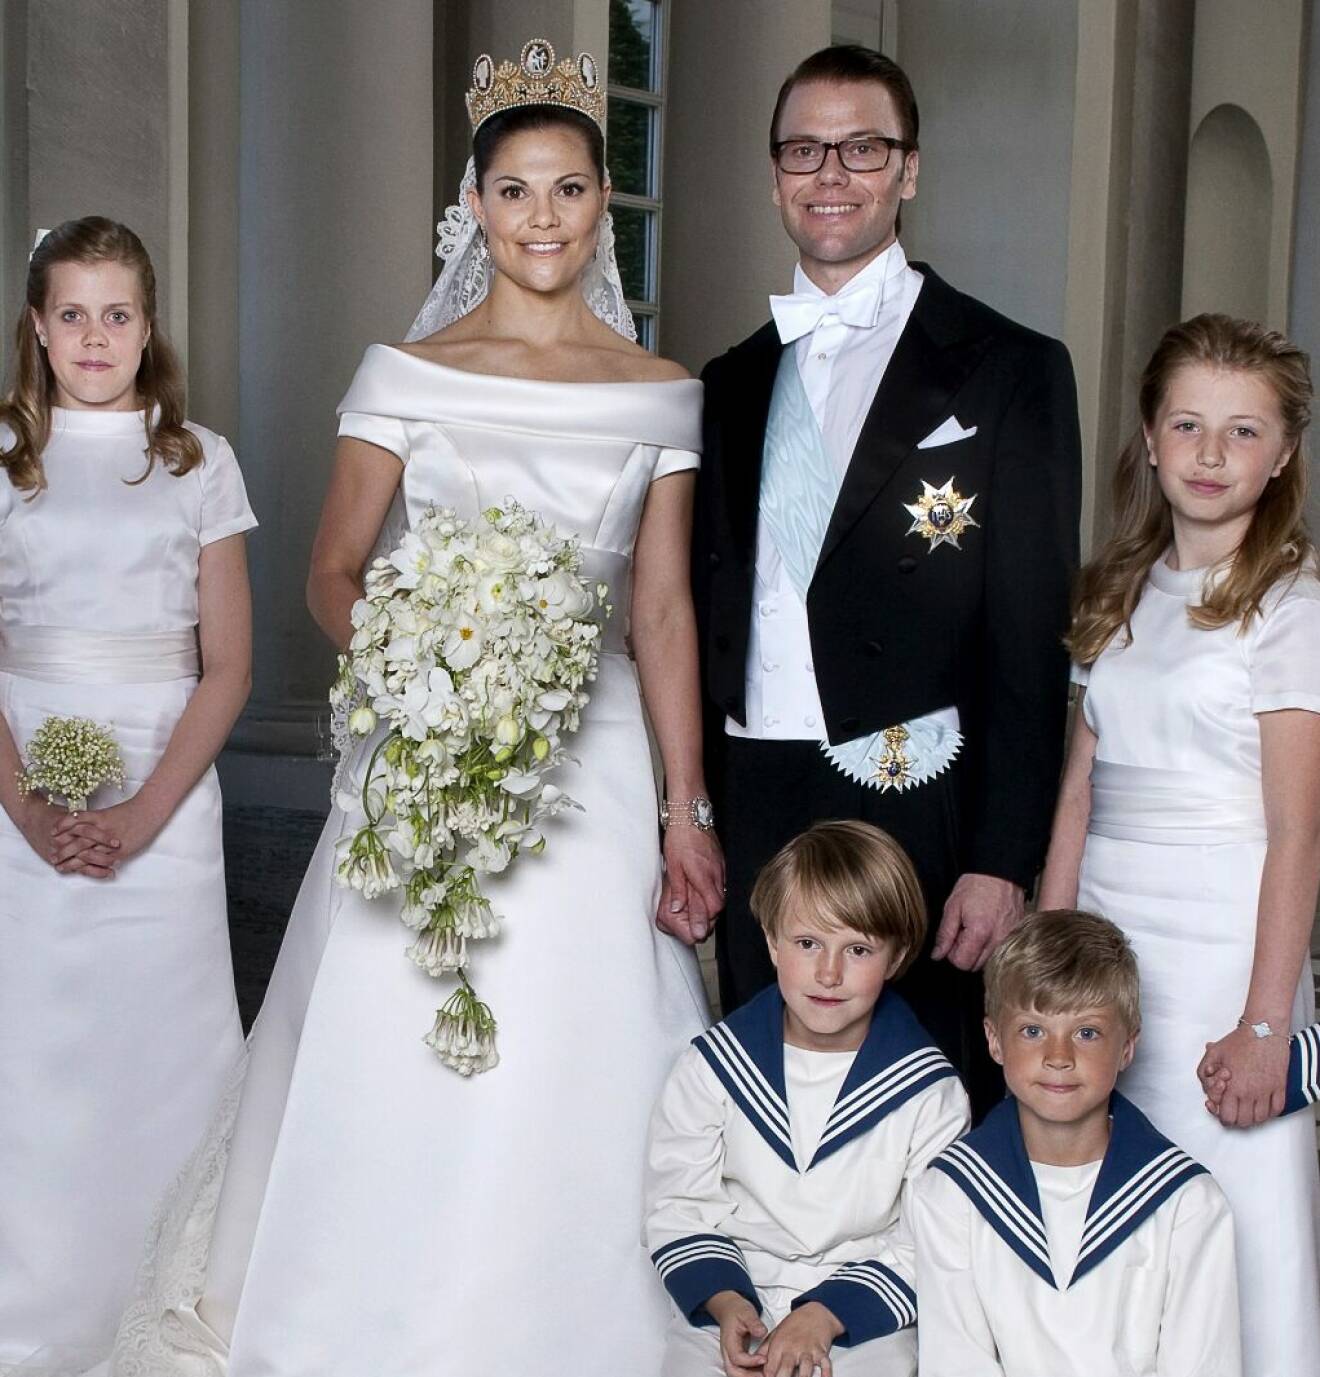 Madeleine von Dincklage och Hedvig Blom i brudnäbbet på kronprinsessan Victorias och prins Daniels bröllop 2010 tillsammans med Leo Sommerlath och Ian De Geer